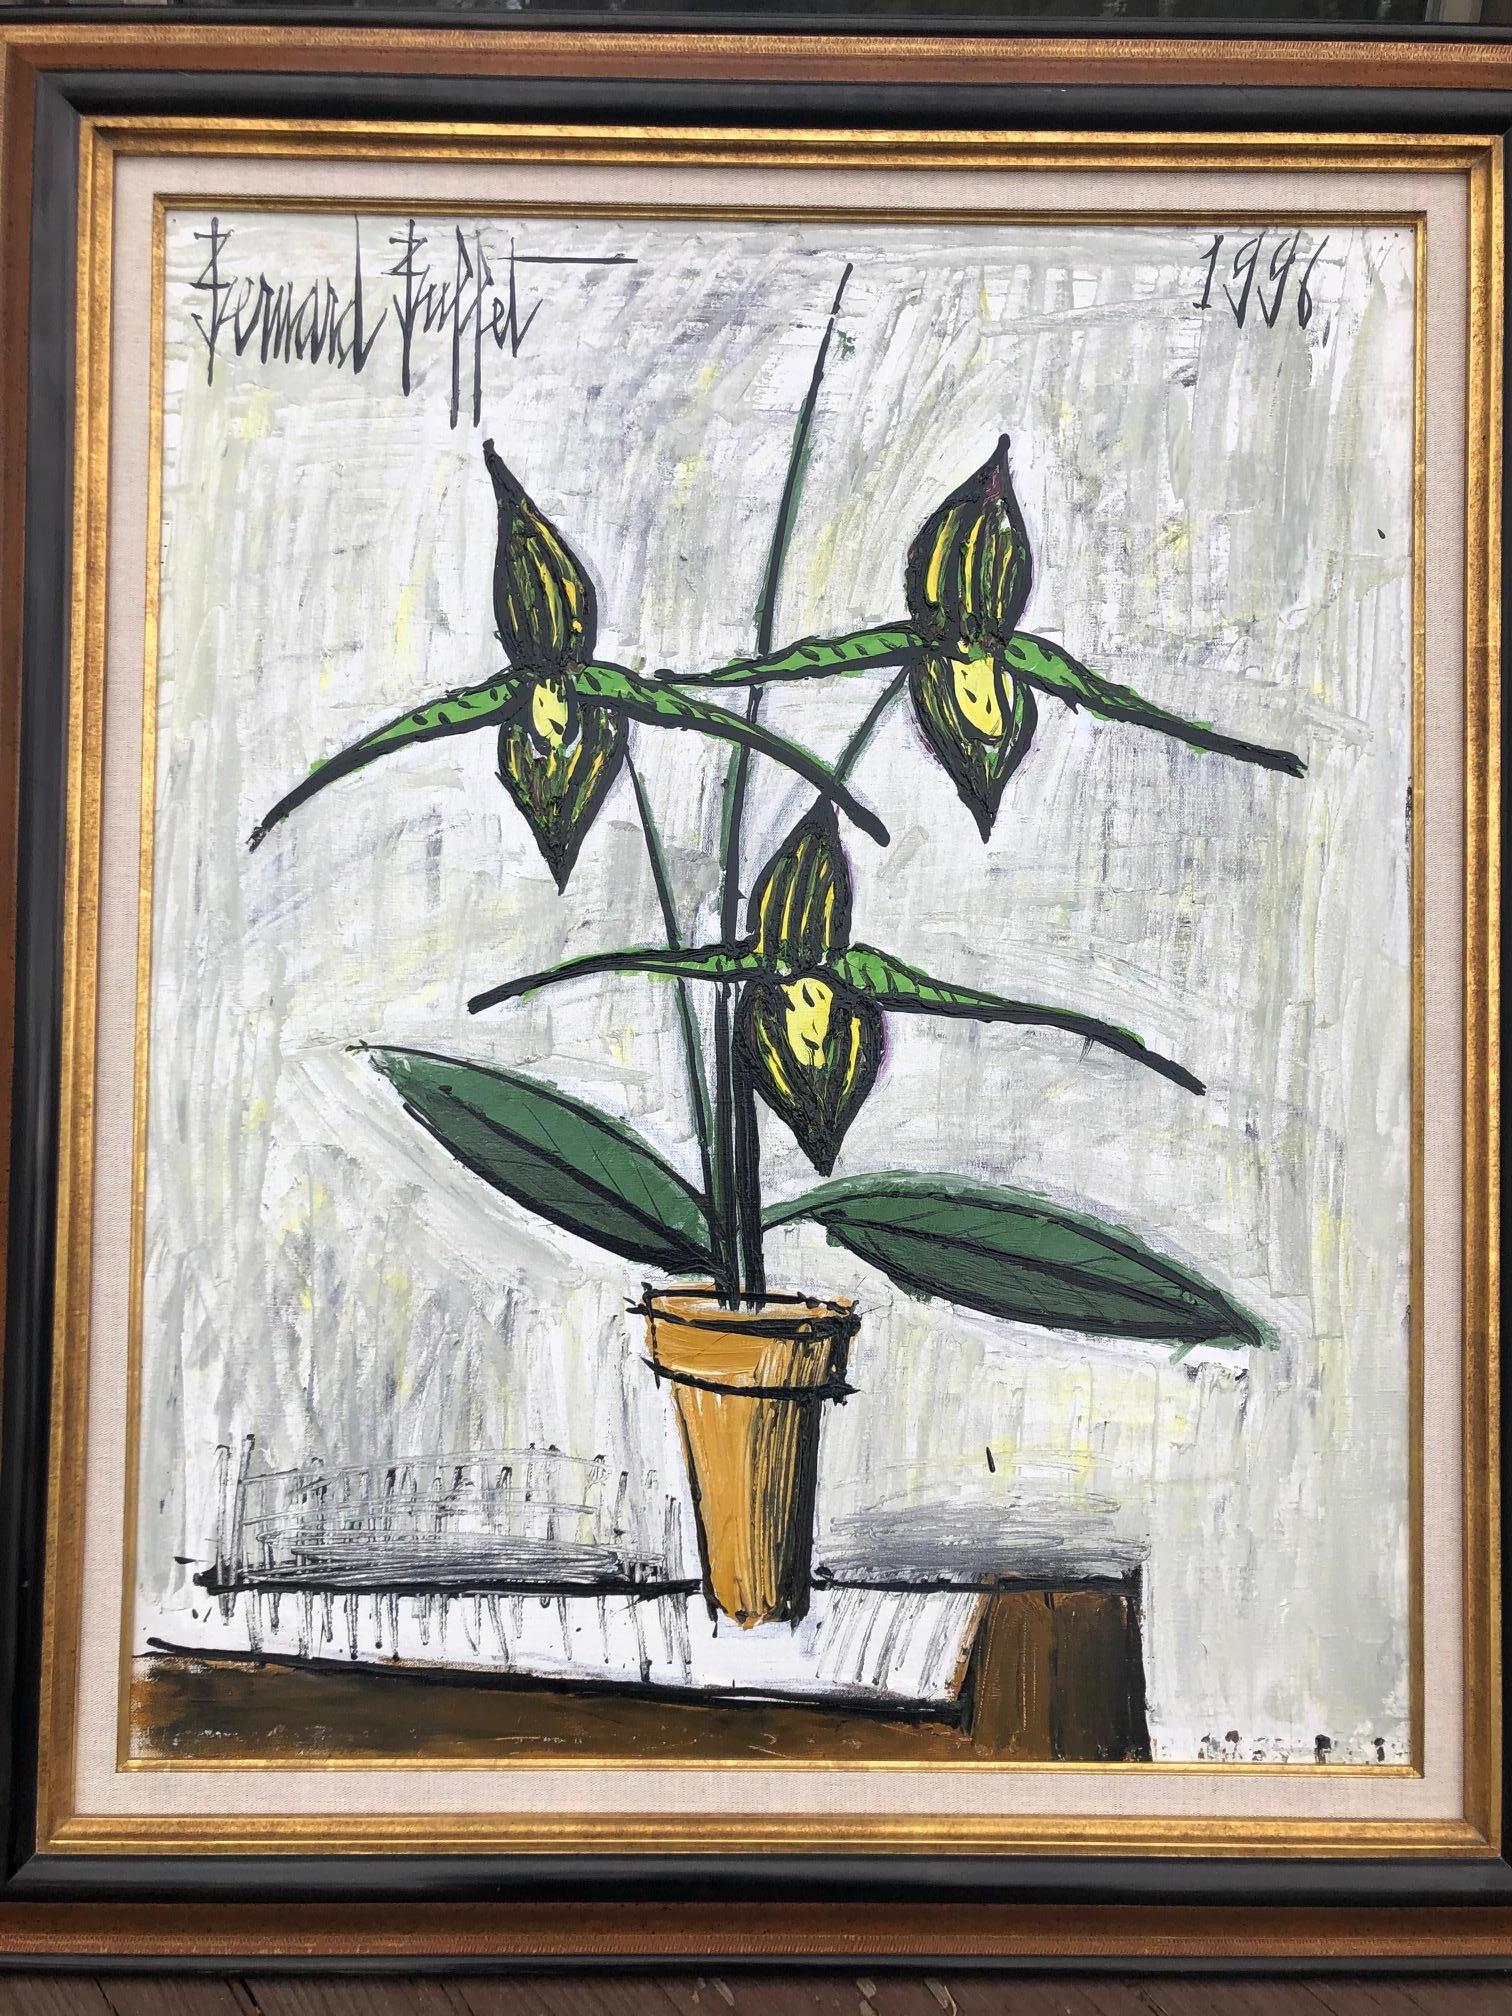 Lilies - Painting by Bernard Buffet